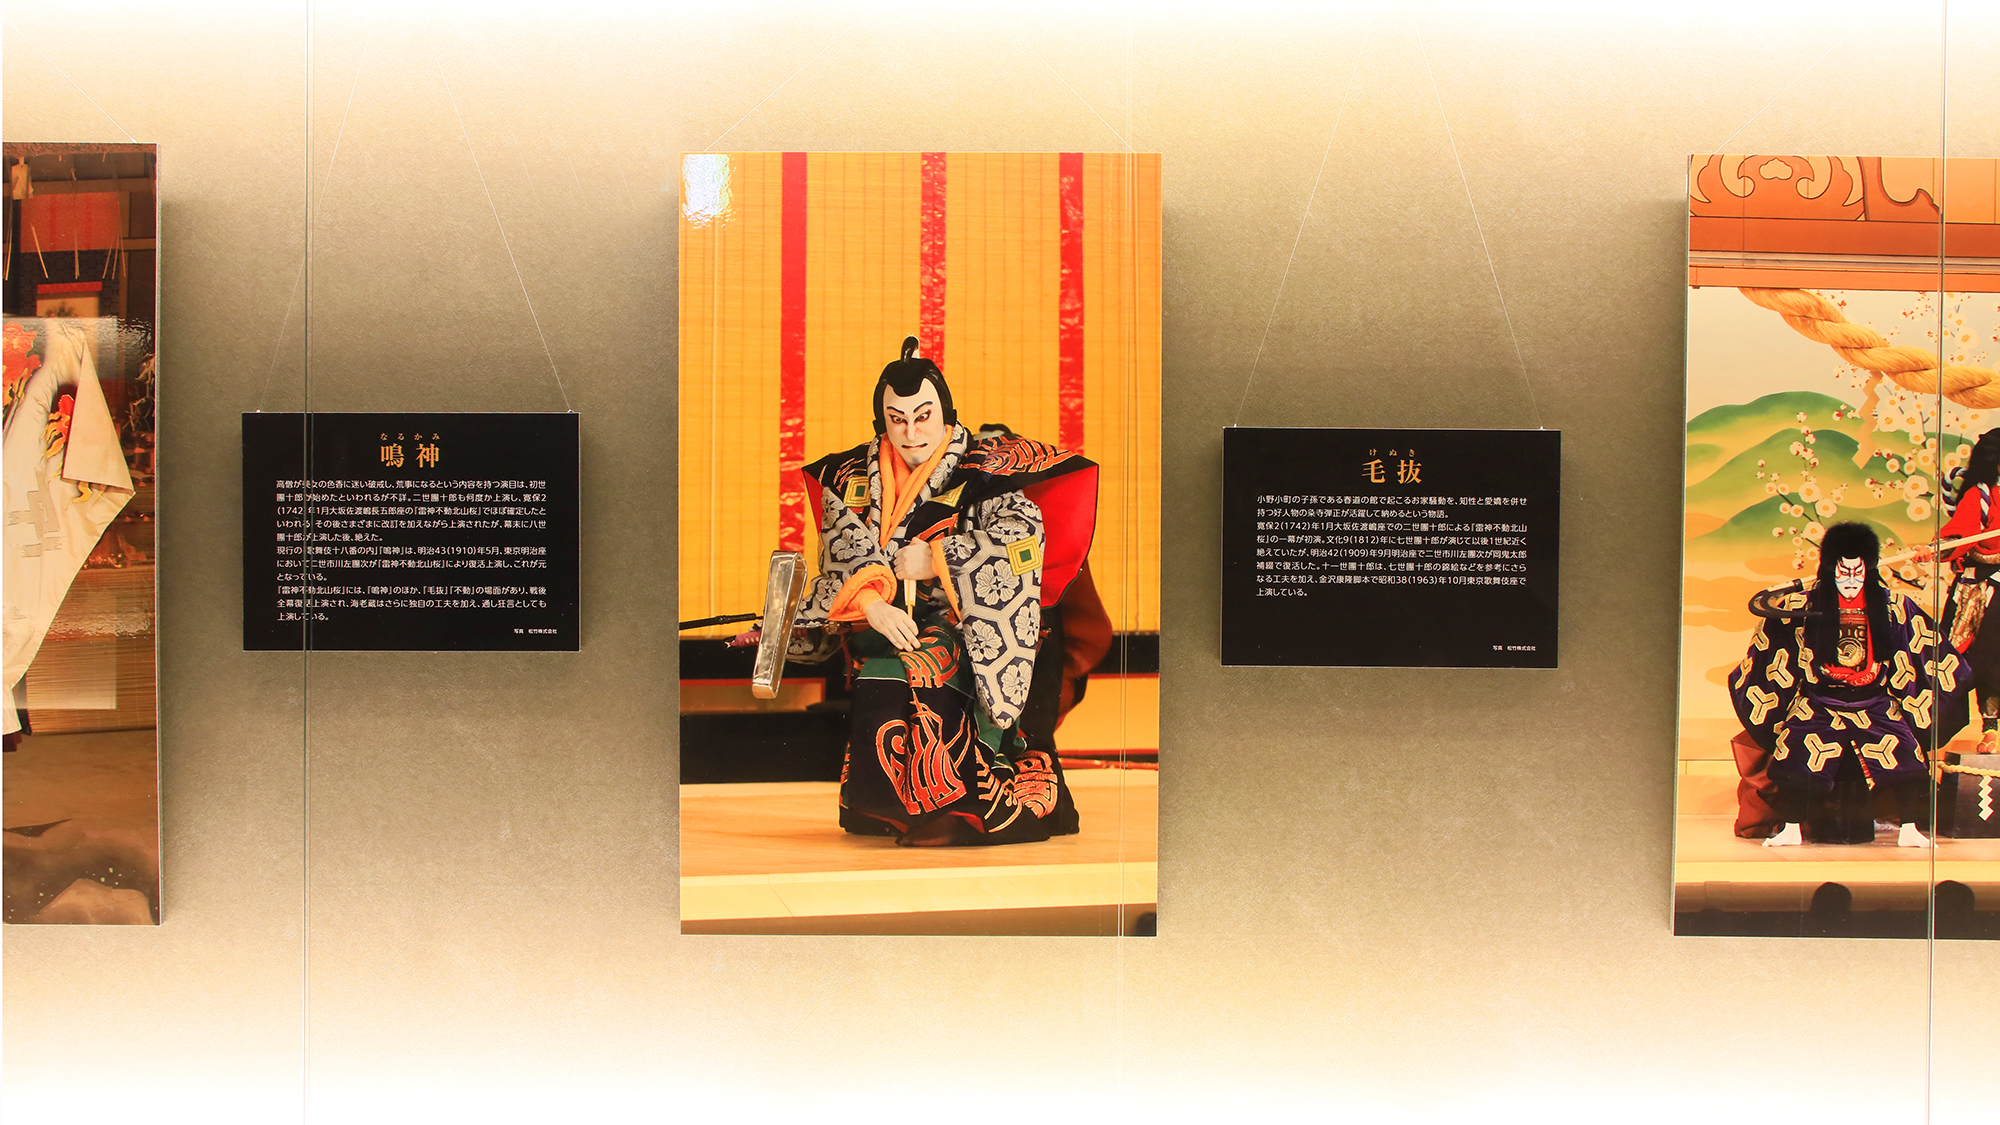 【泊まる歌舞伎美術館】館内では市川家の収蔵品をご覧いただけます。